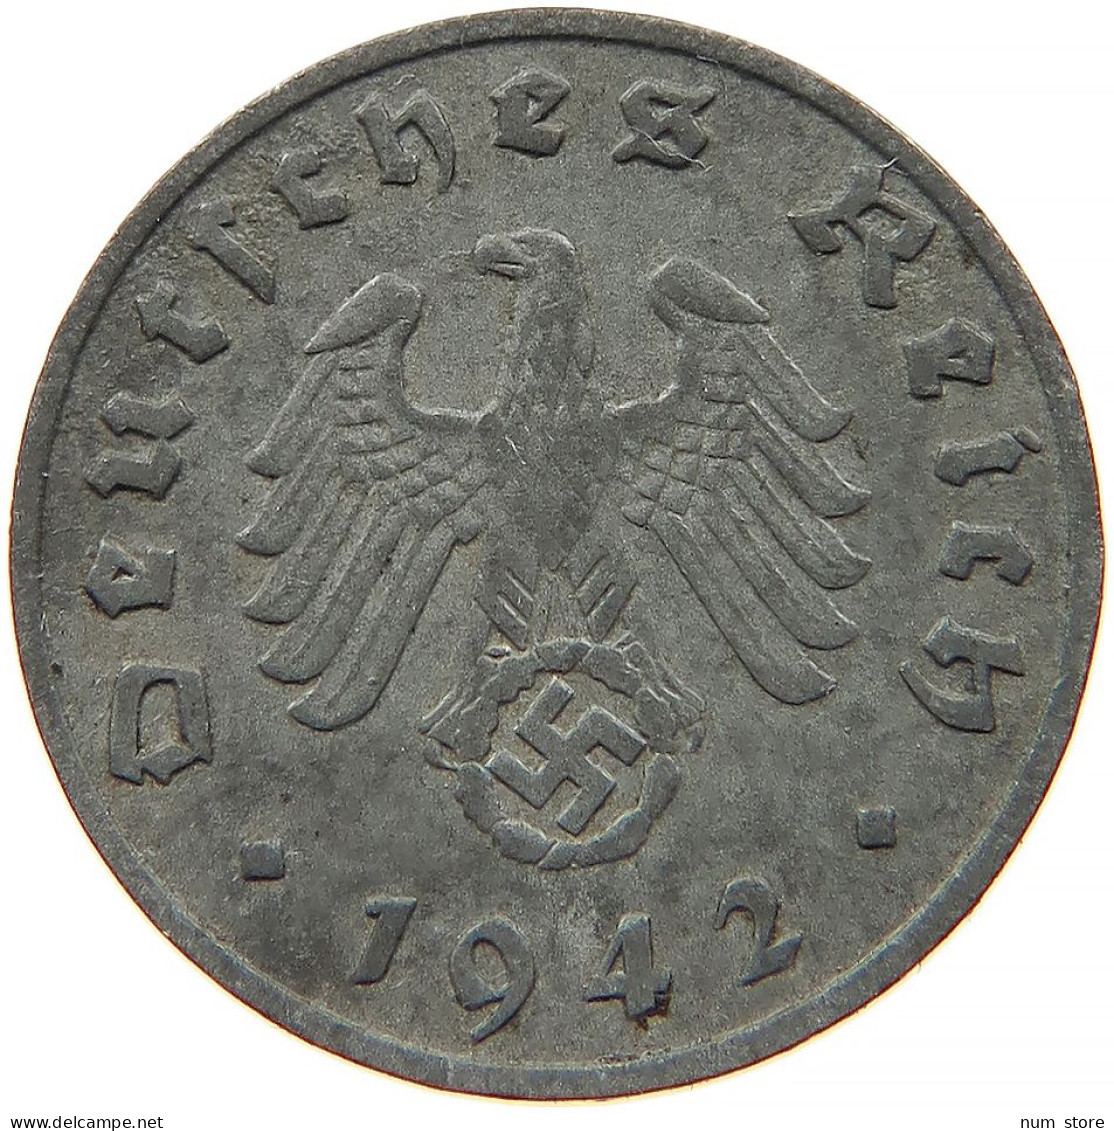 GERMANY 1 REICHSPFENNIG 1942 F #s091 0985 - 1 Reichspfennig